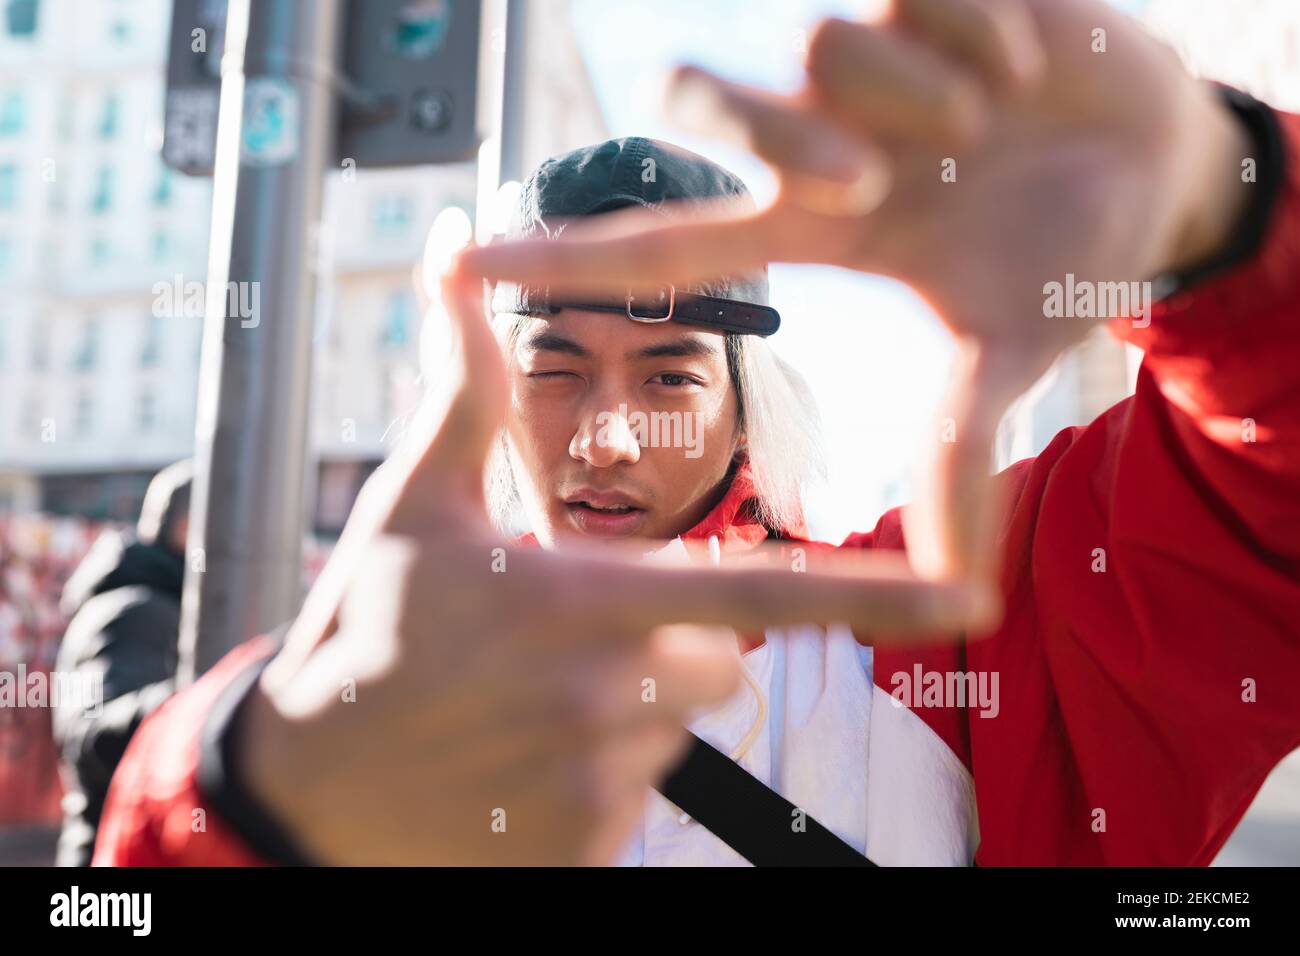 Jeune homme formant un cadre de doigt à l'extérieur Banque D'Images